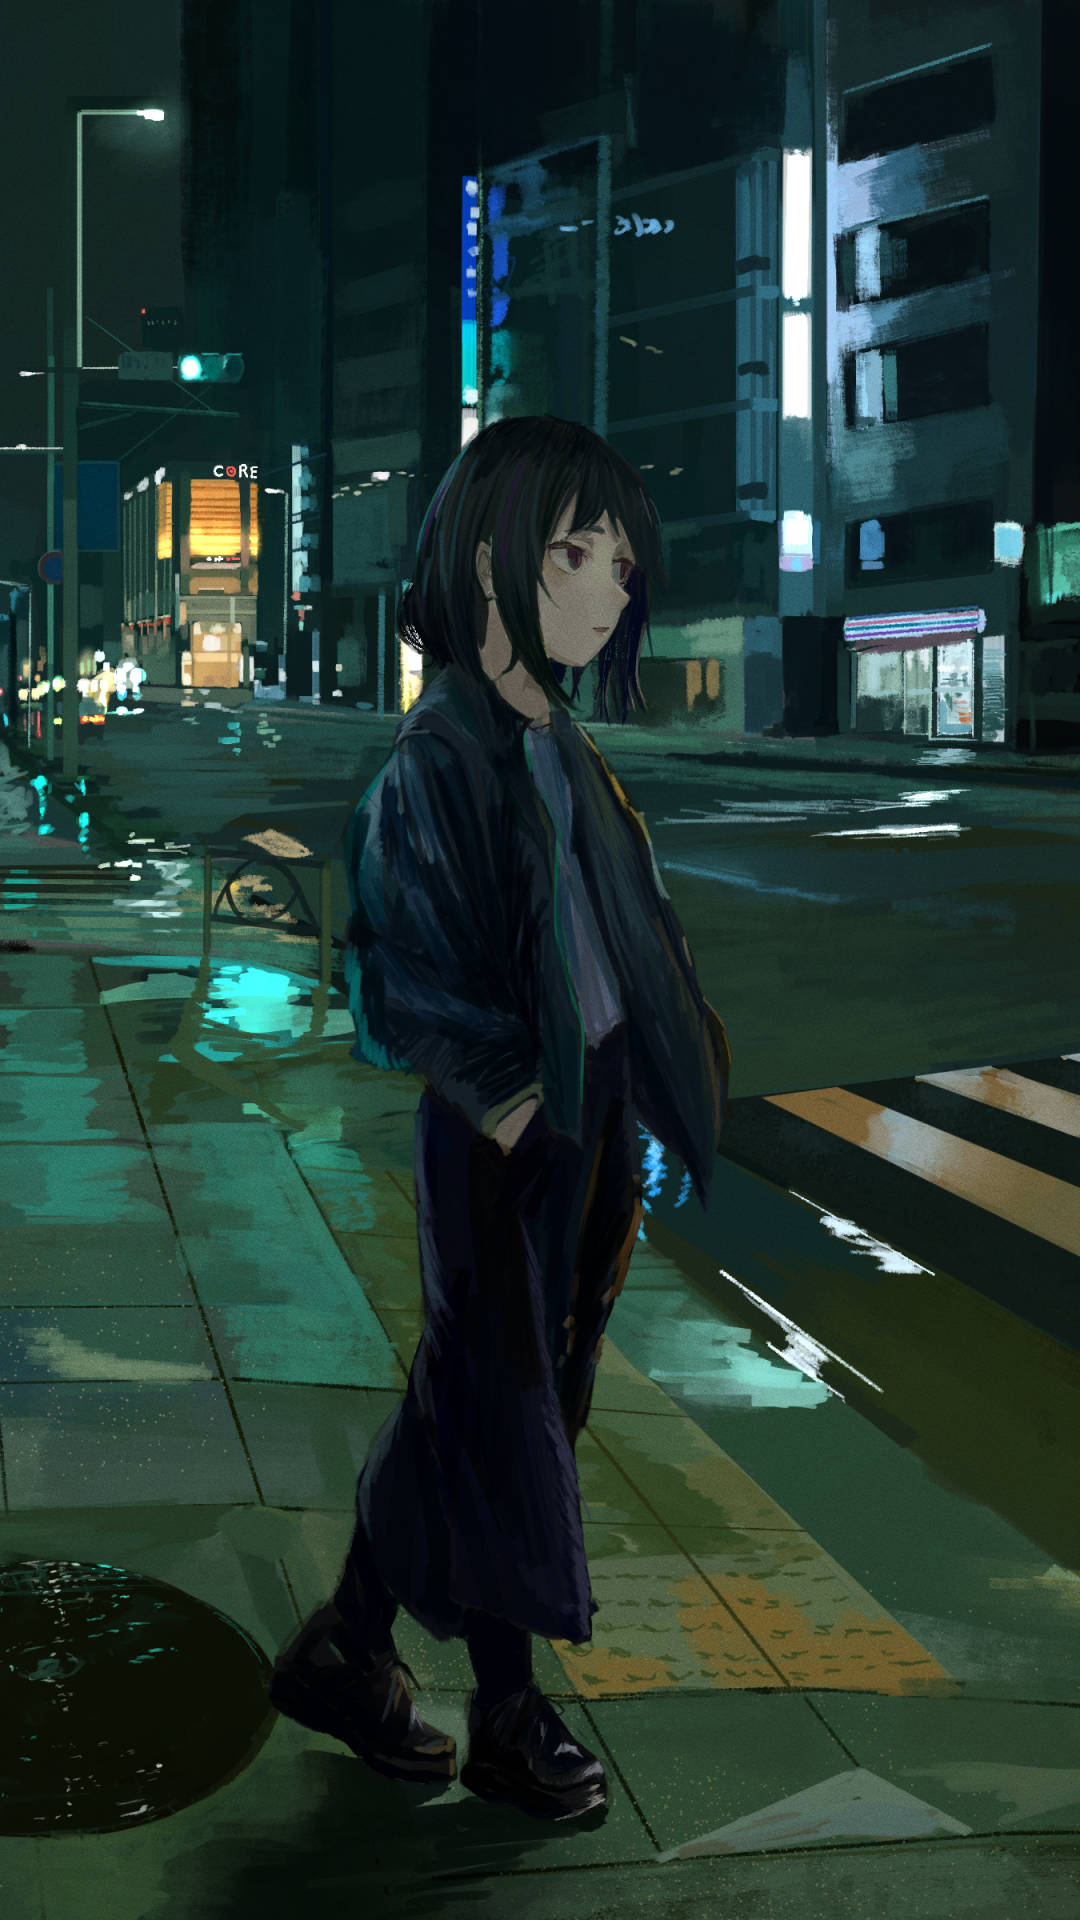 En pige står på en gade om natten. Wallpaper